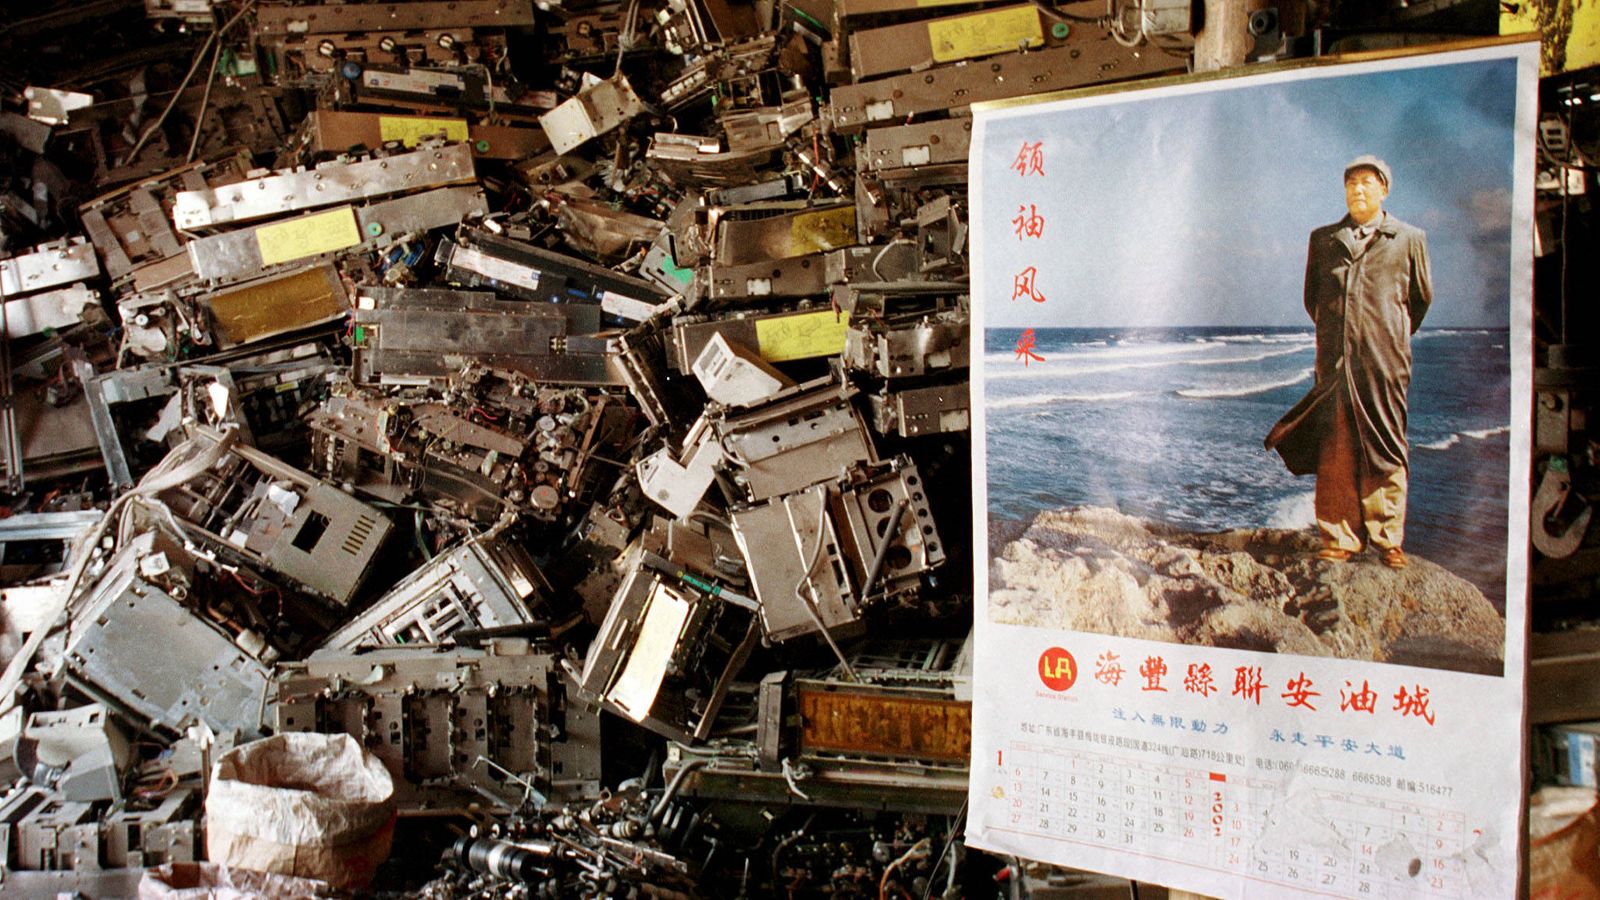 Foto: Basura tecnológica apilada tras un poster de Mao Zedong en la aldea de Yaocuowei, en el sur de China, en 2002. (Reuters)